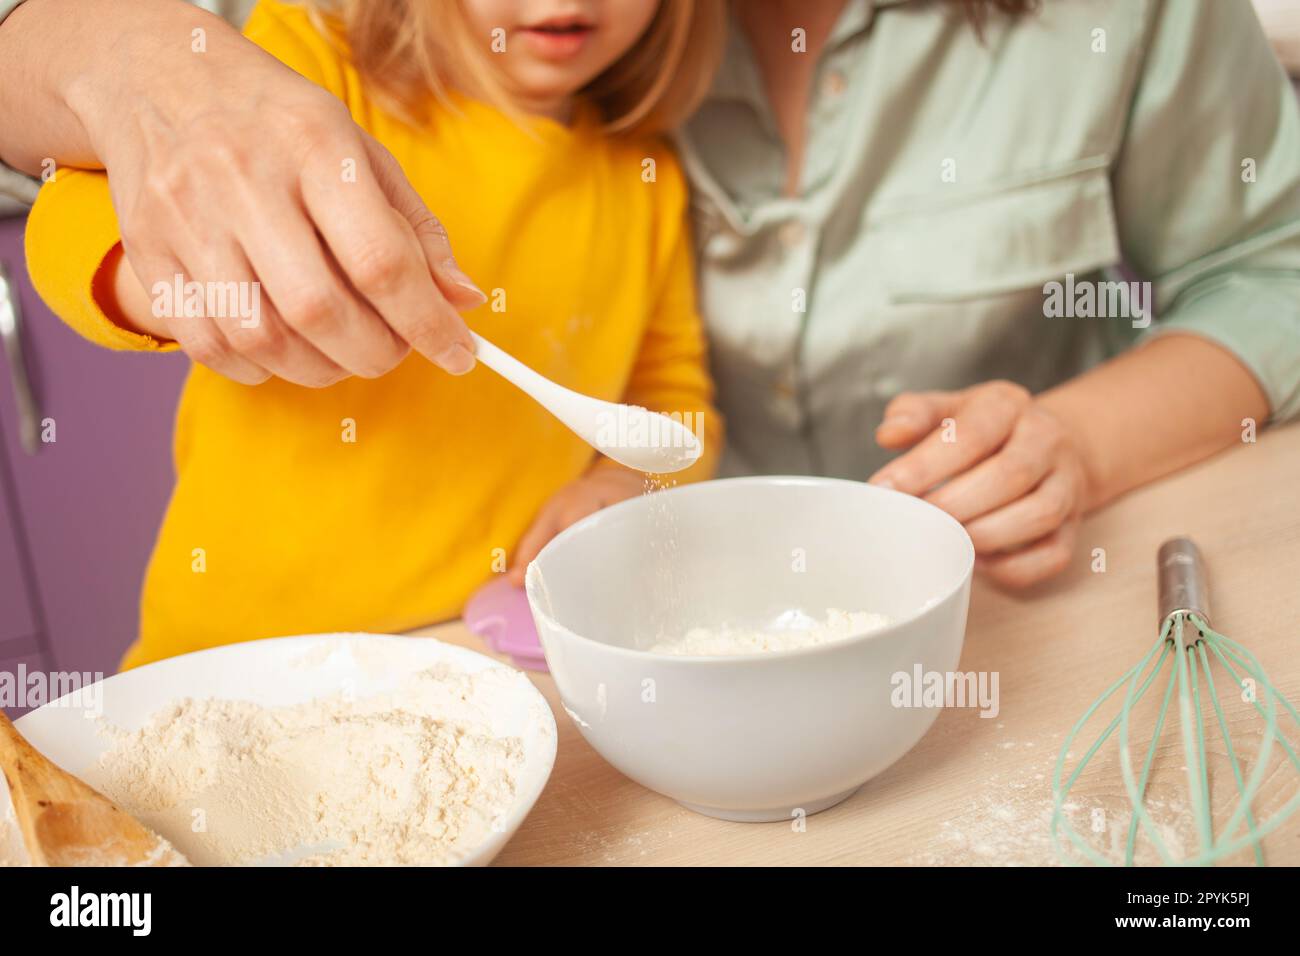 Nonna e nipote preparano l'impasto, trascorrono del tempo insieme, le relazioni di famiglia, l'amore. versare lo zucchero in una tazza. Foto Stock